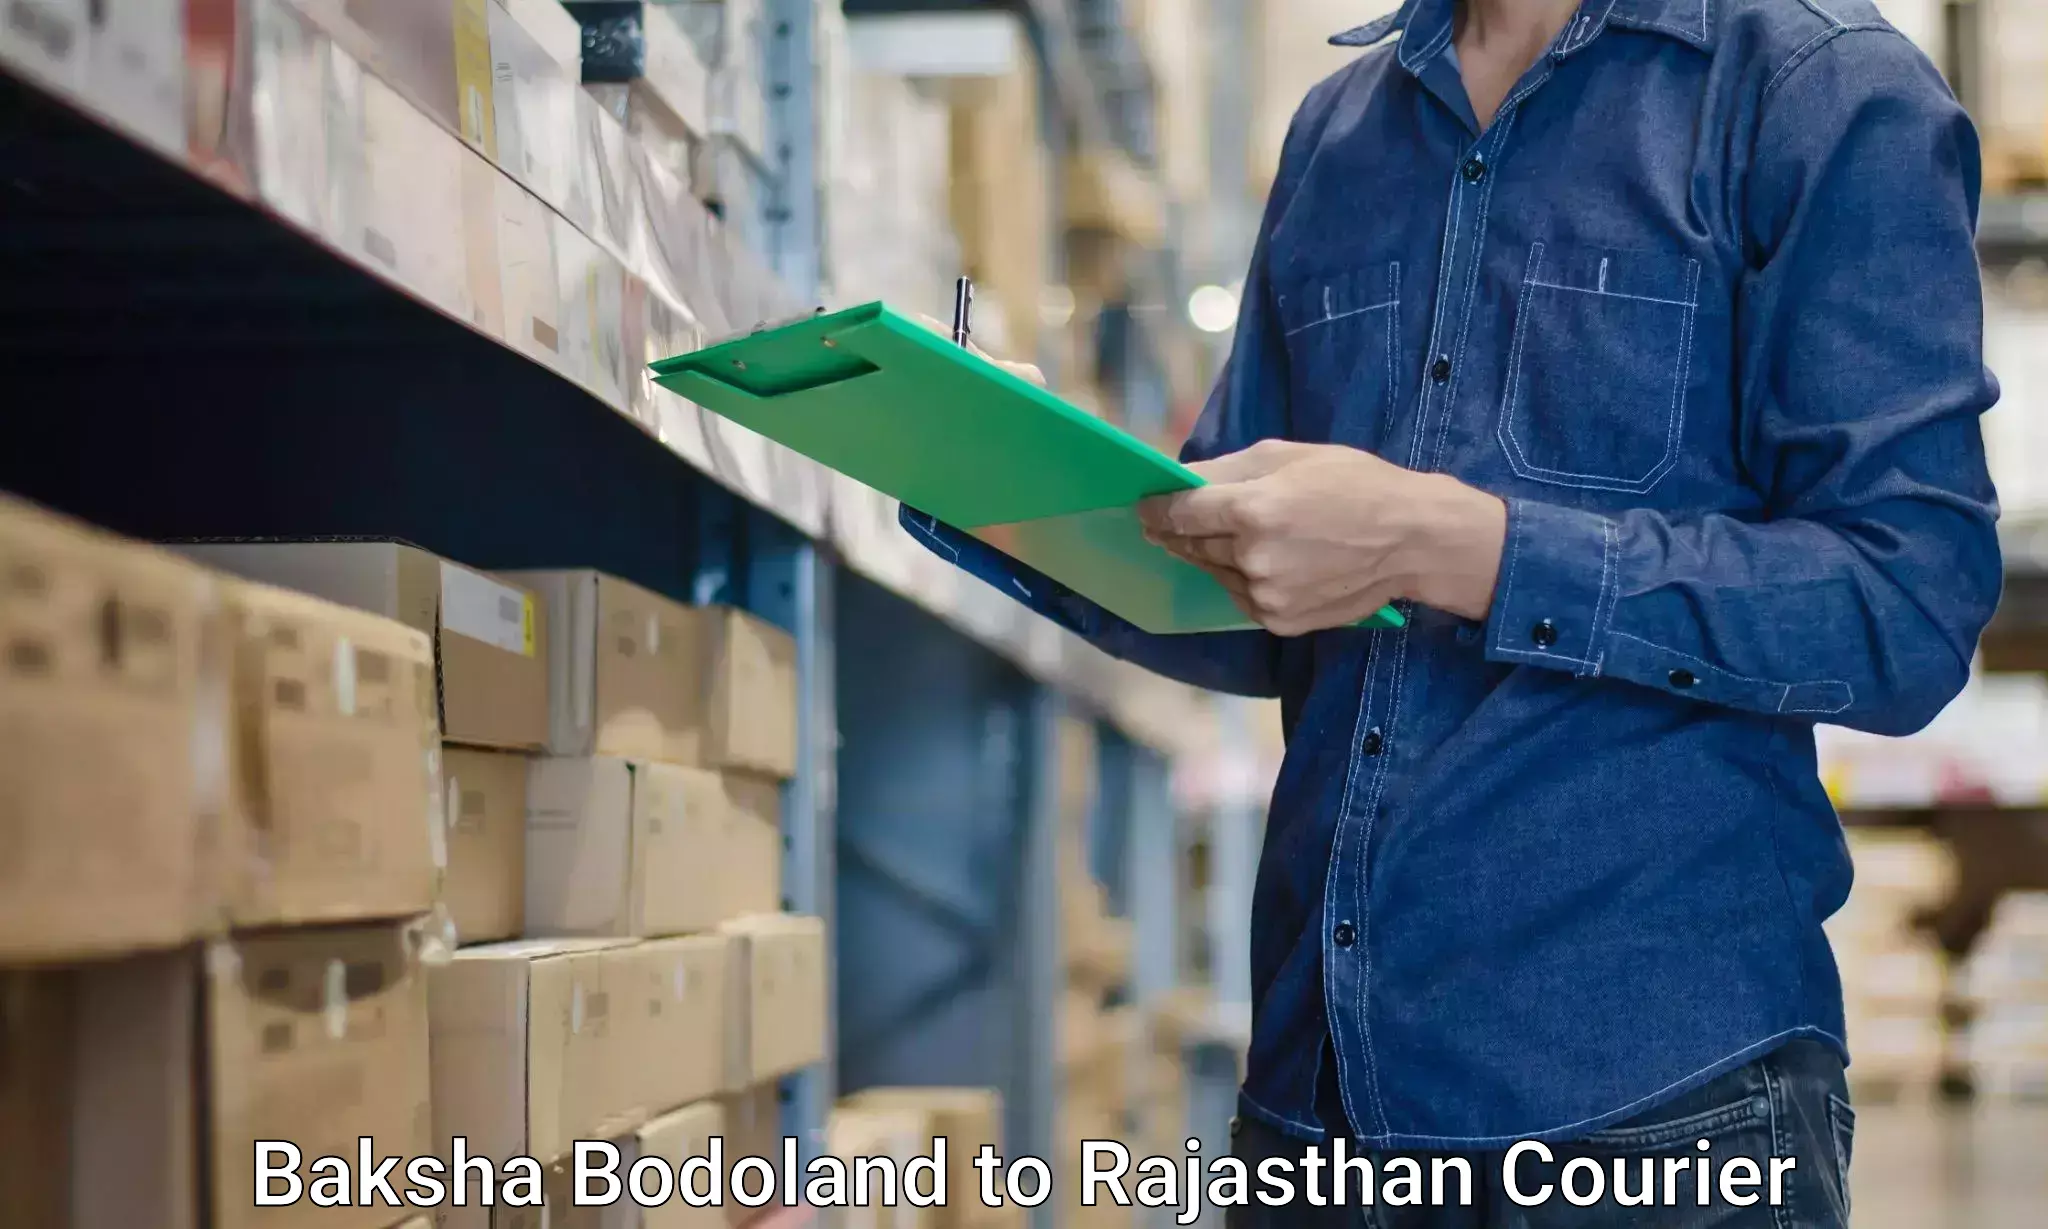 Home furniture relocation Baksha Bodoland to Rajasthan